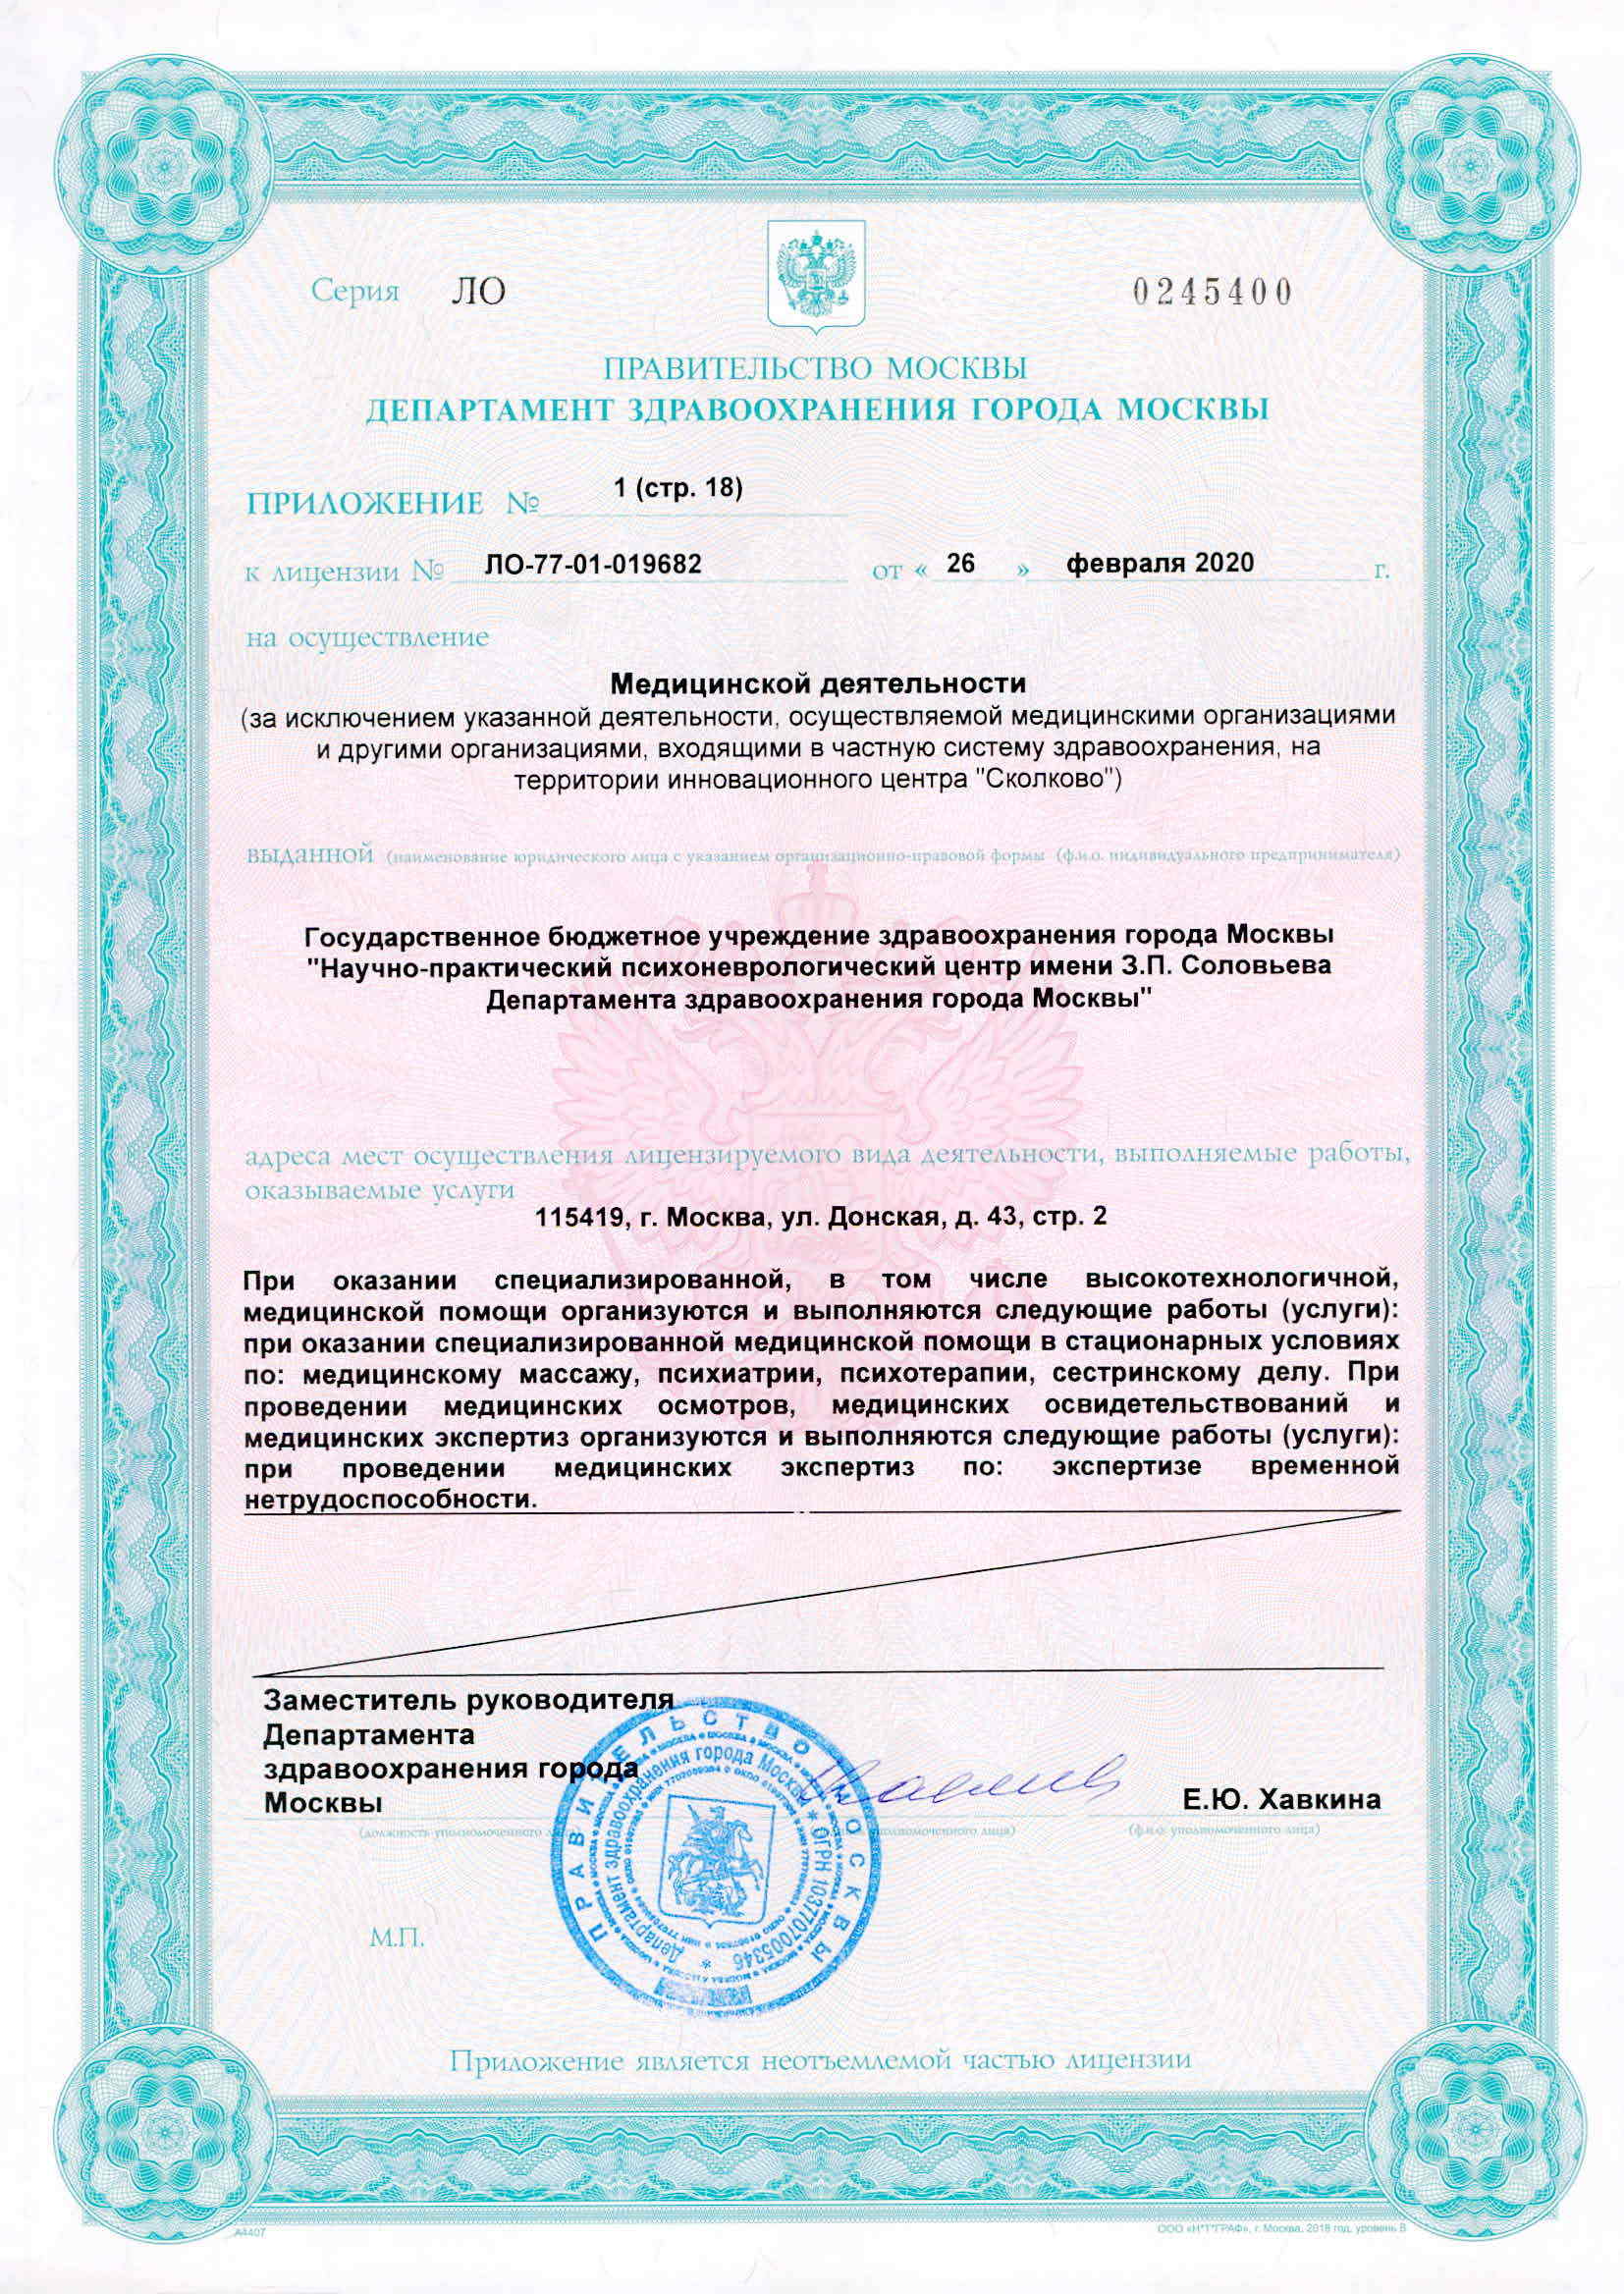 Клиника неврозов им. З.П. Соловьева лицензия №16